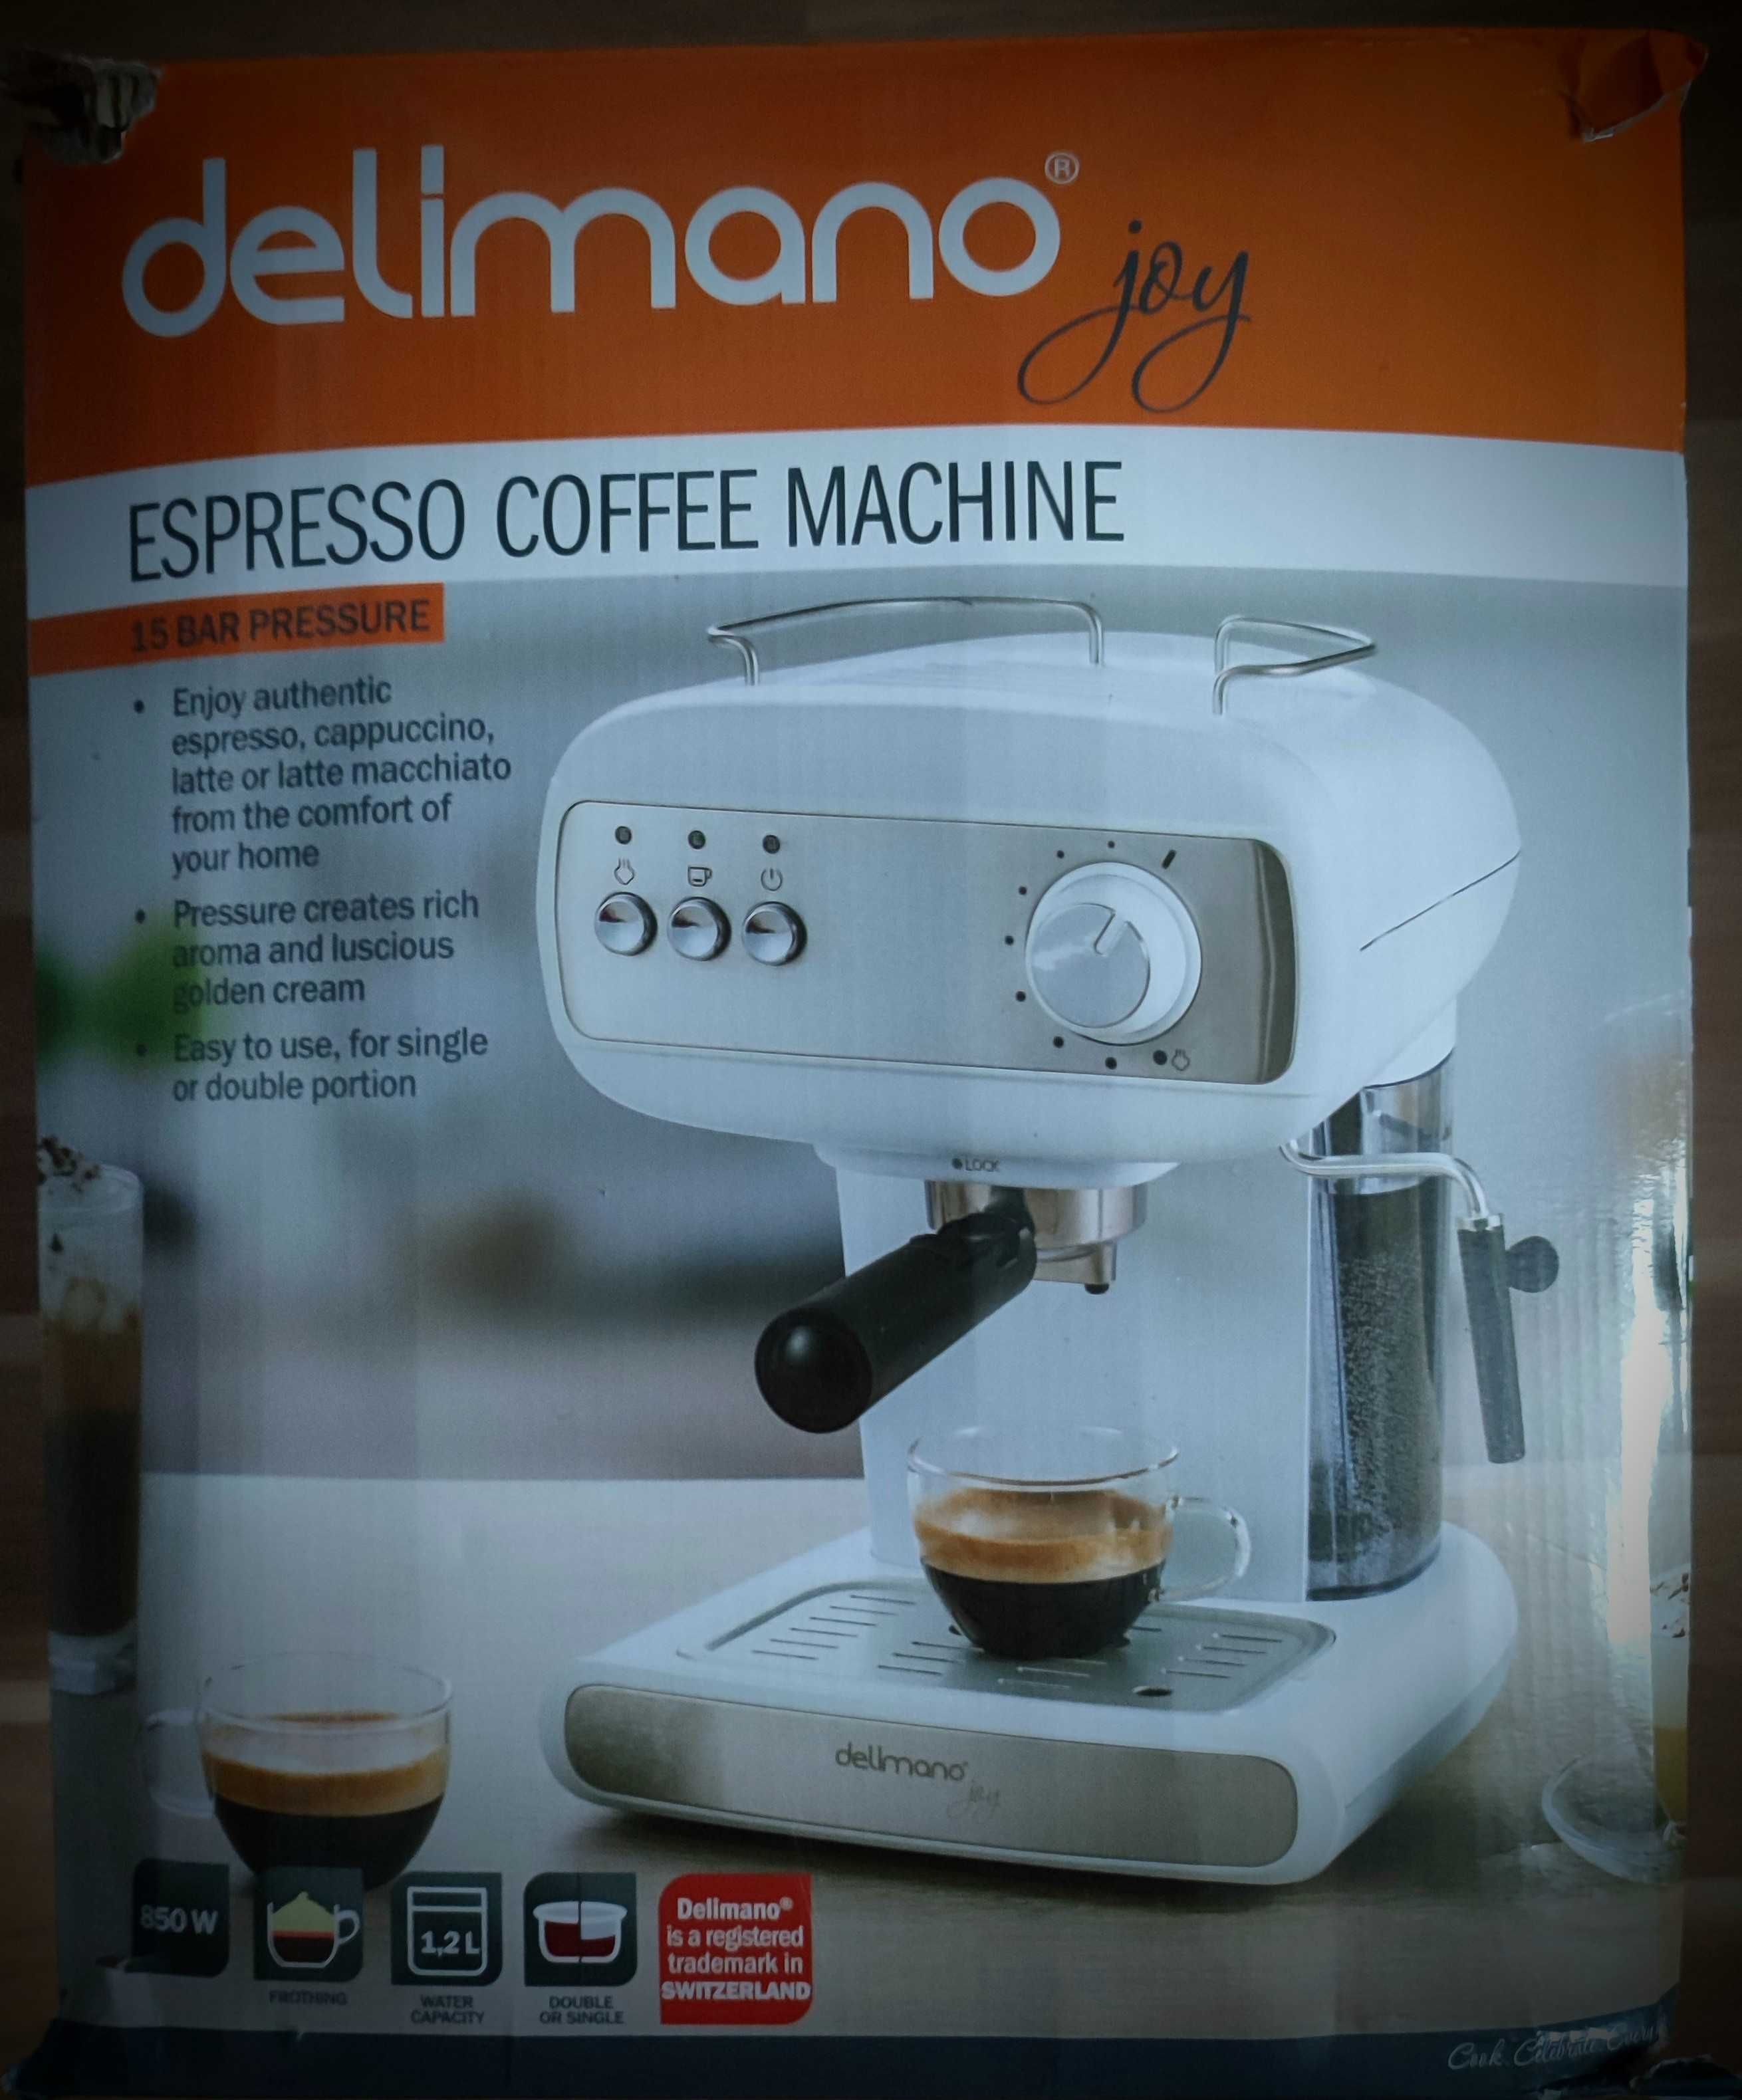 Delimano espresso coffee machine